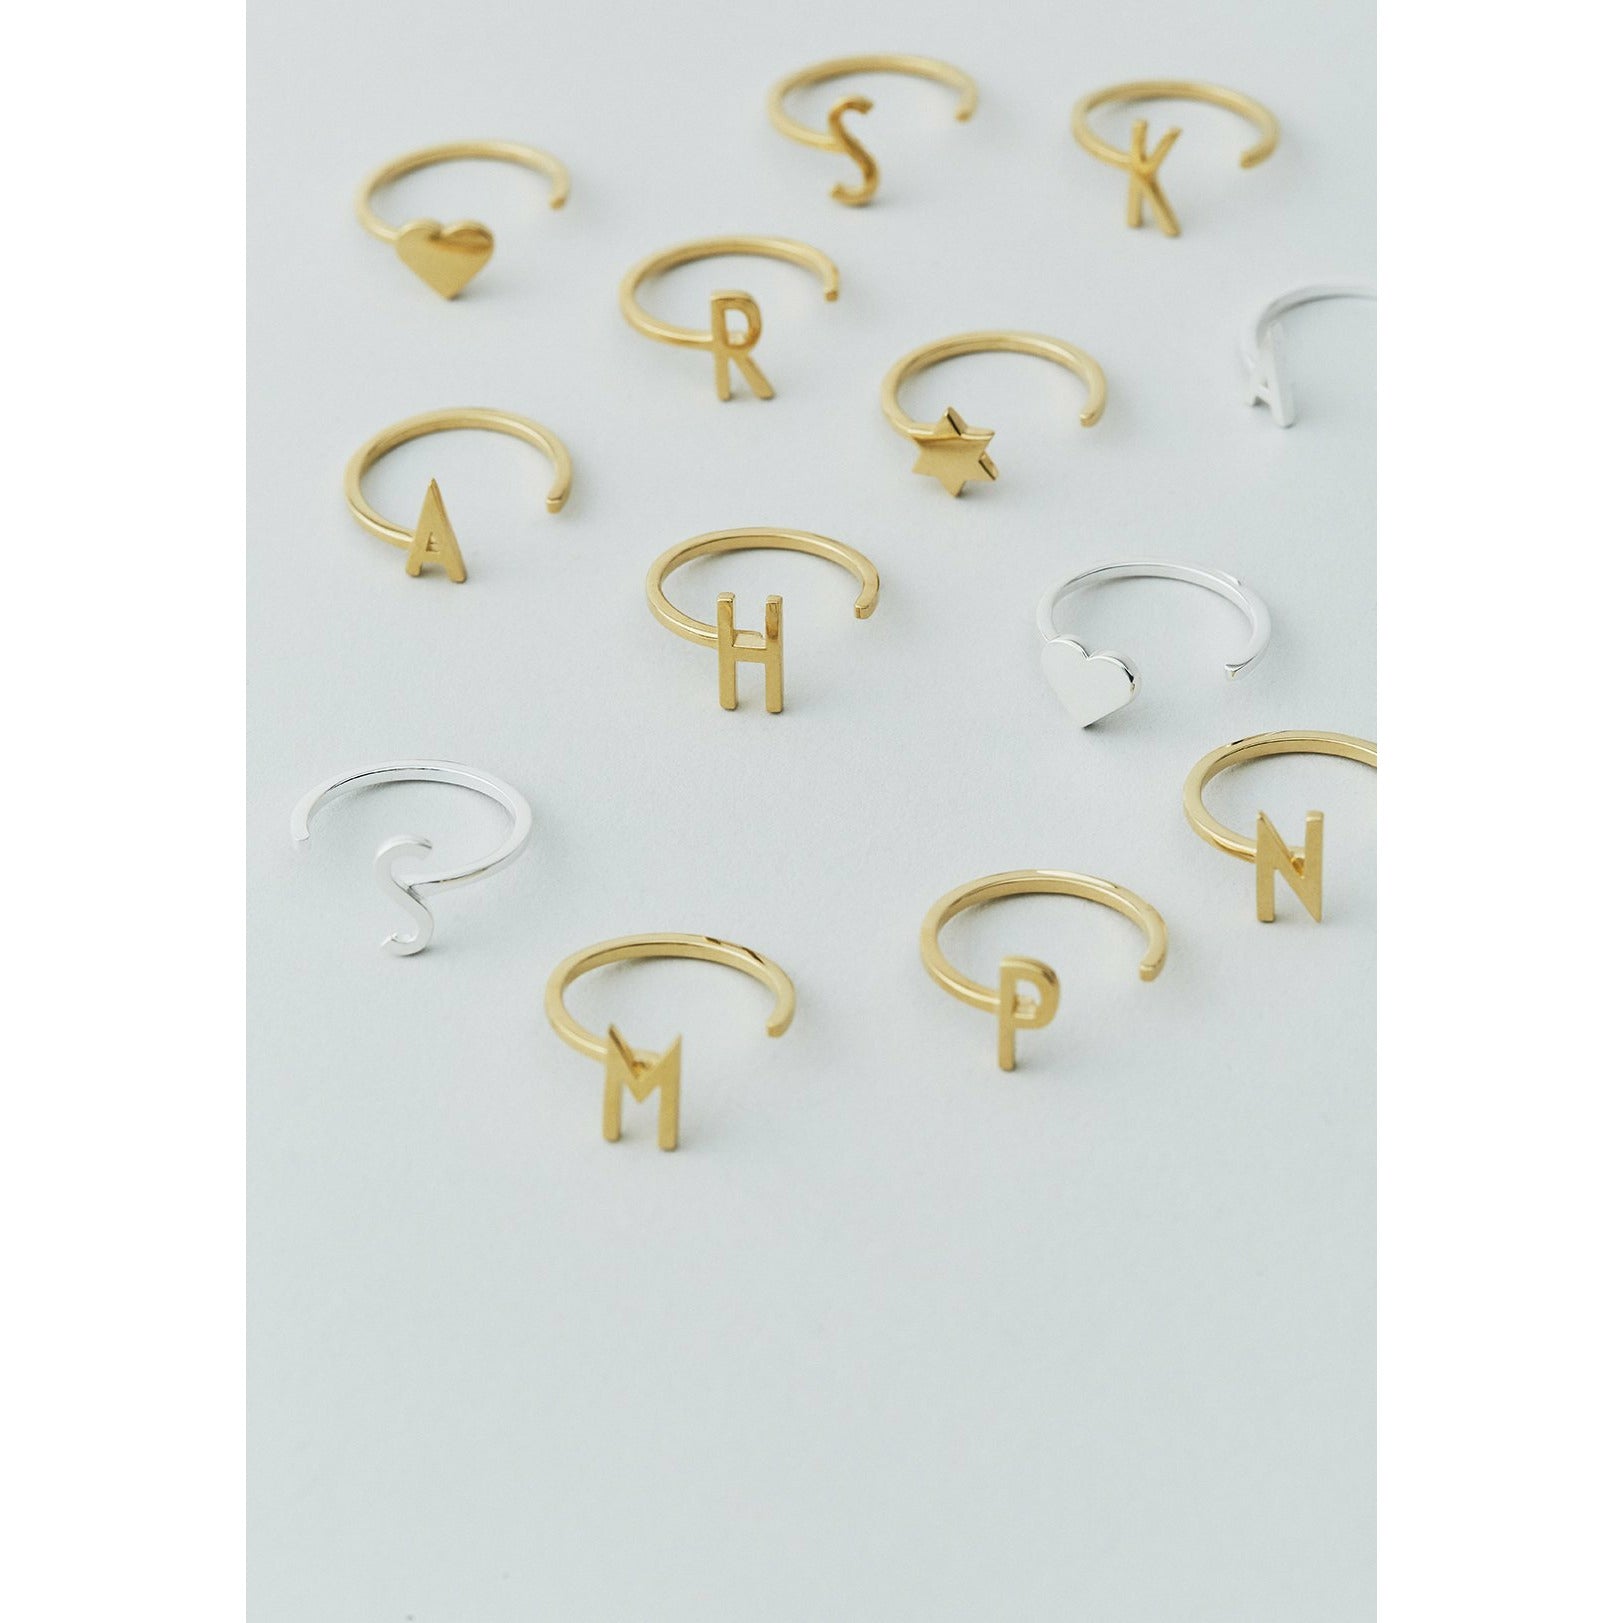 Letras de diseño anillo de cartas A Z, 18k chapado en oro, n